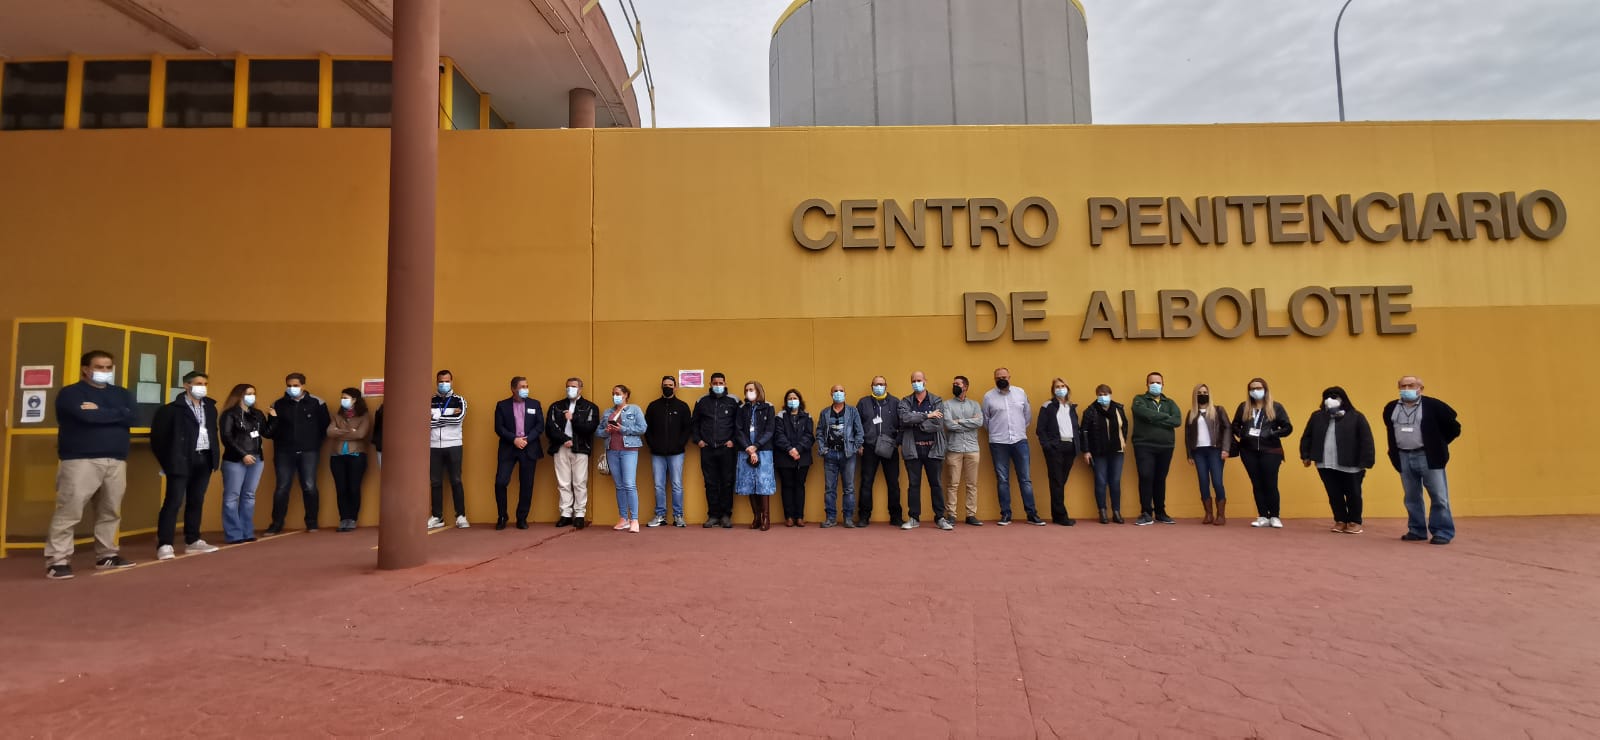 Los trabajadores de la prisión de Albolote paran 15 minutos en protesta por las últimas agresiones y en demanda de más seguridad